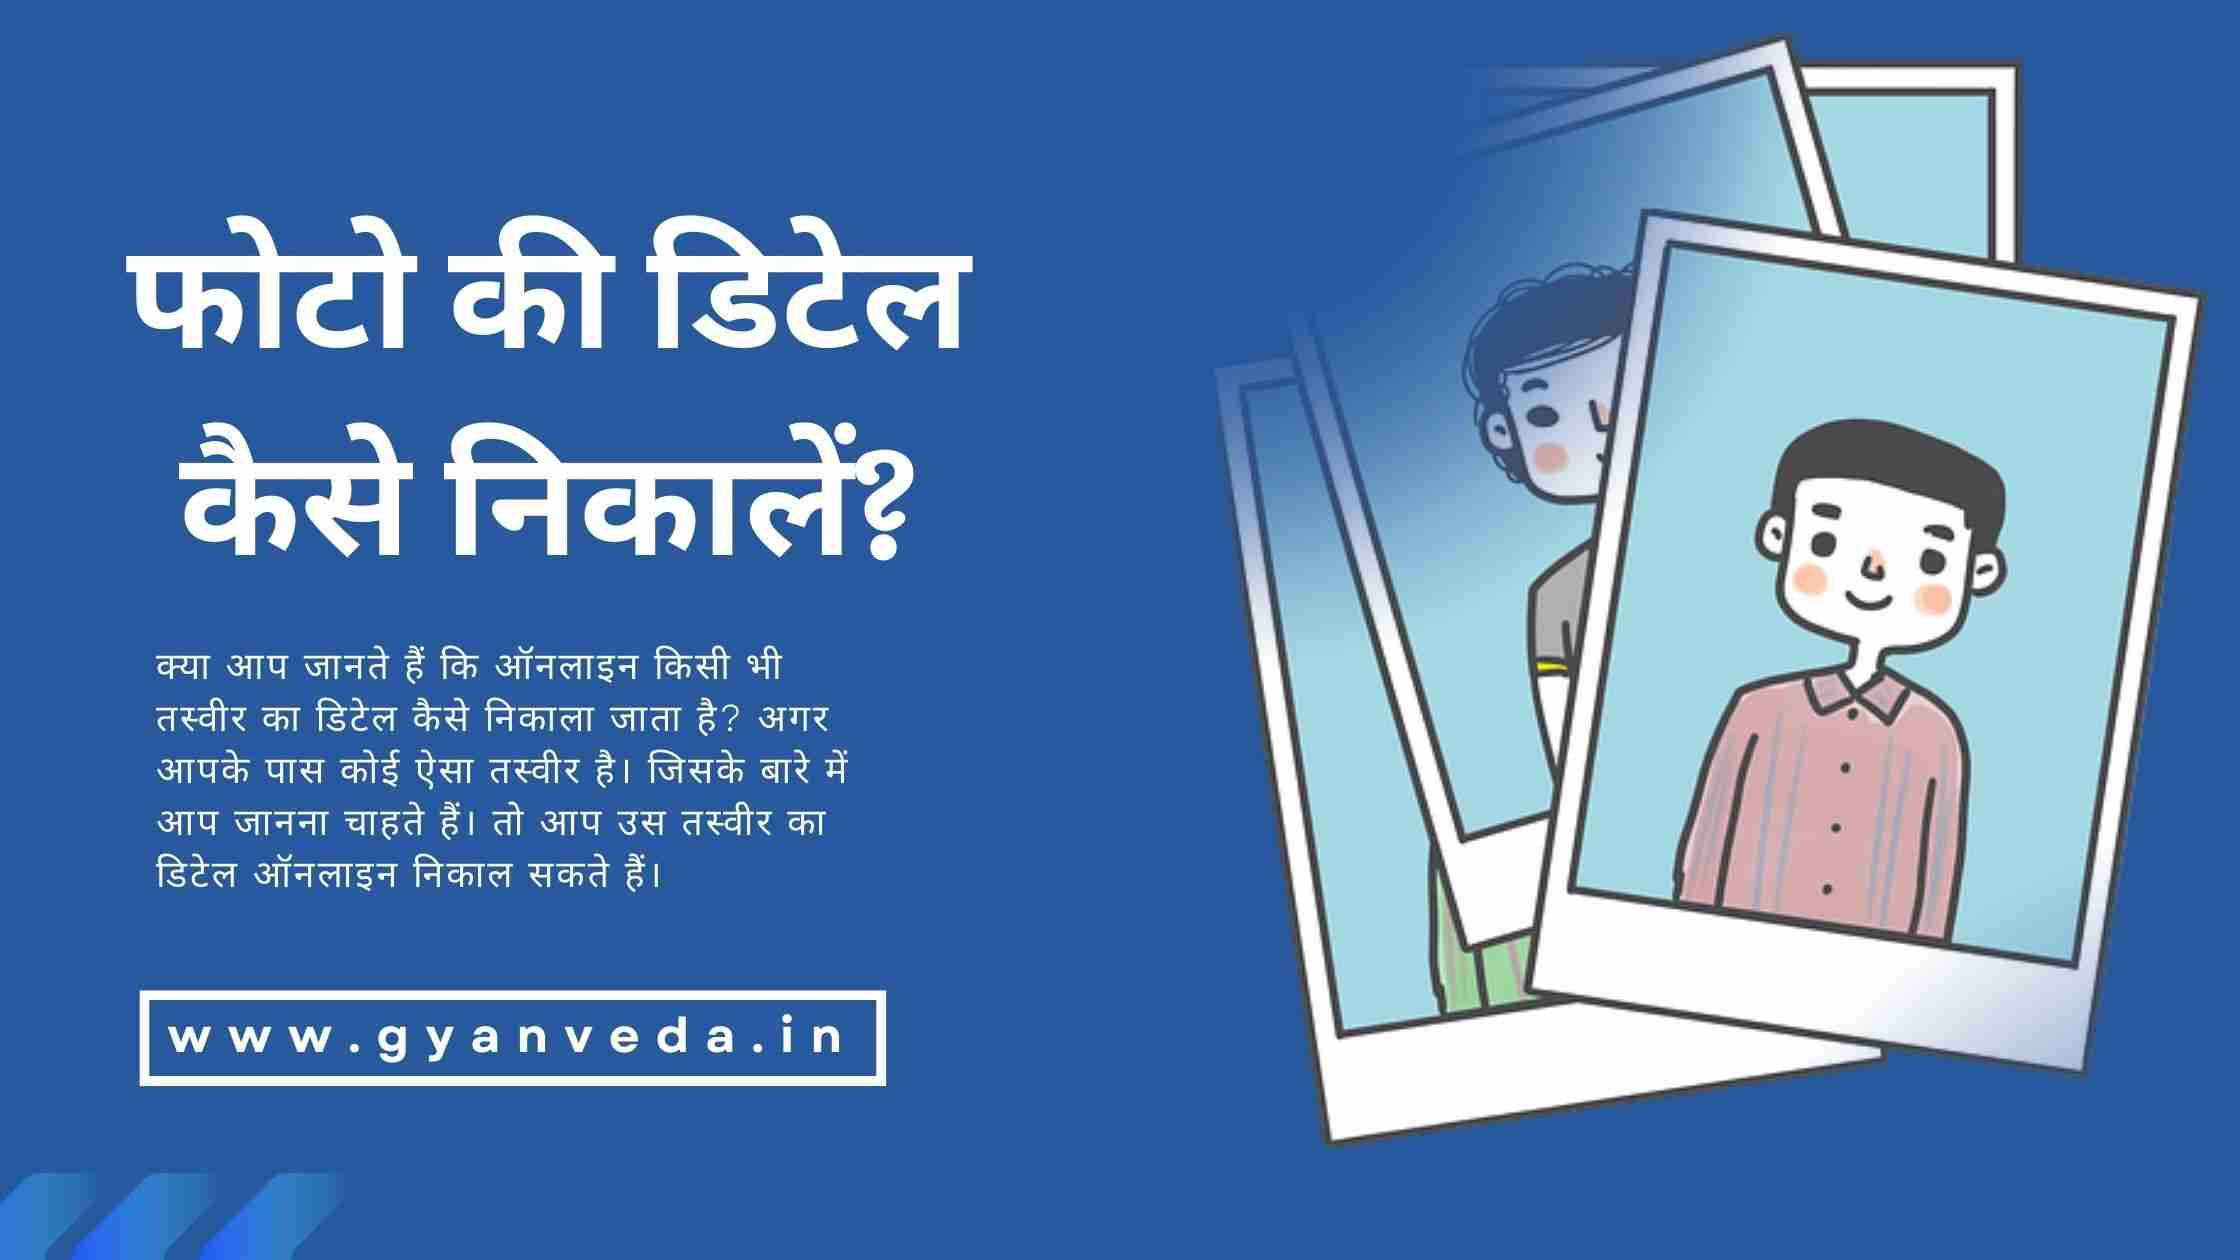 फोटो की डिटेल कैसे निकाले? Find Photo Details Online in Hindi